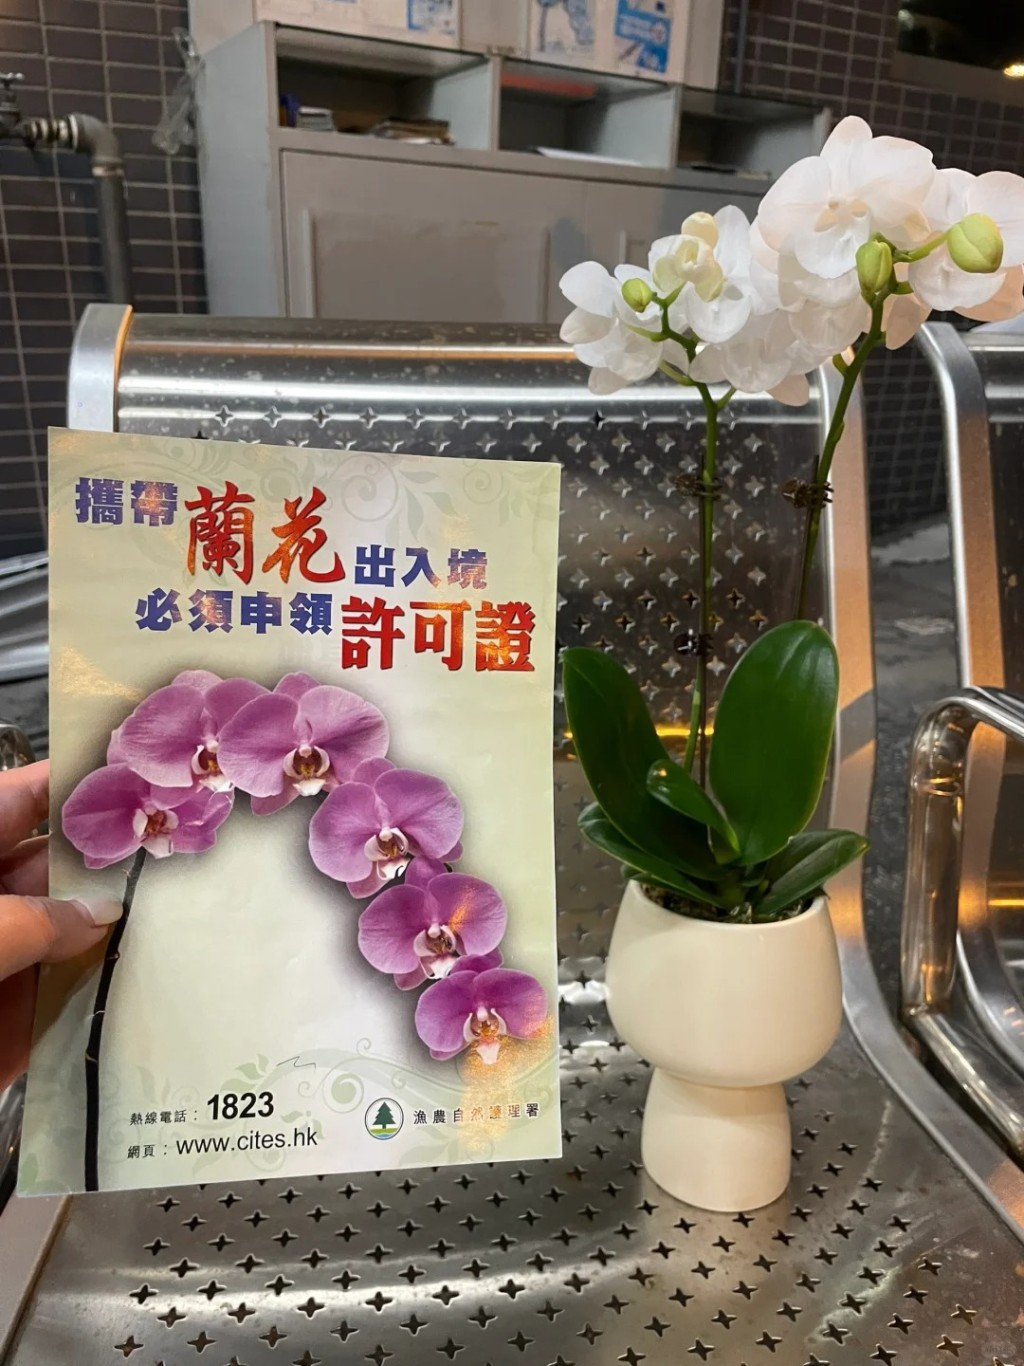 事主呼吁网民切勿携带蝴蝶兰入境香港（图片来源：小红书）